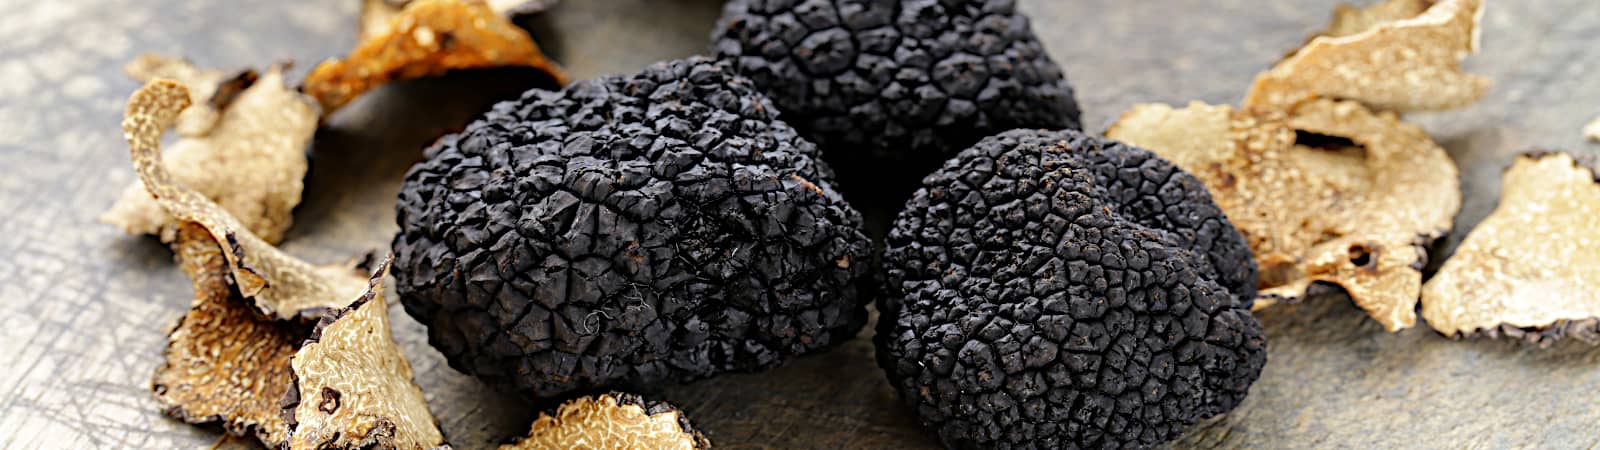 truffes noires provence